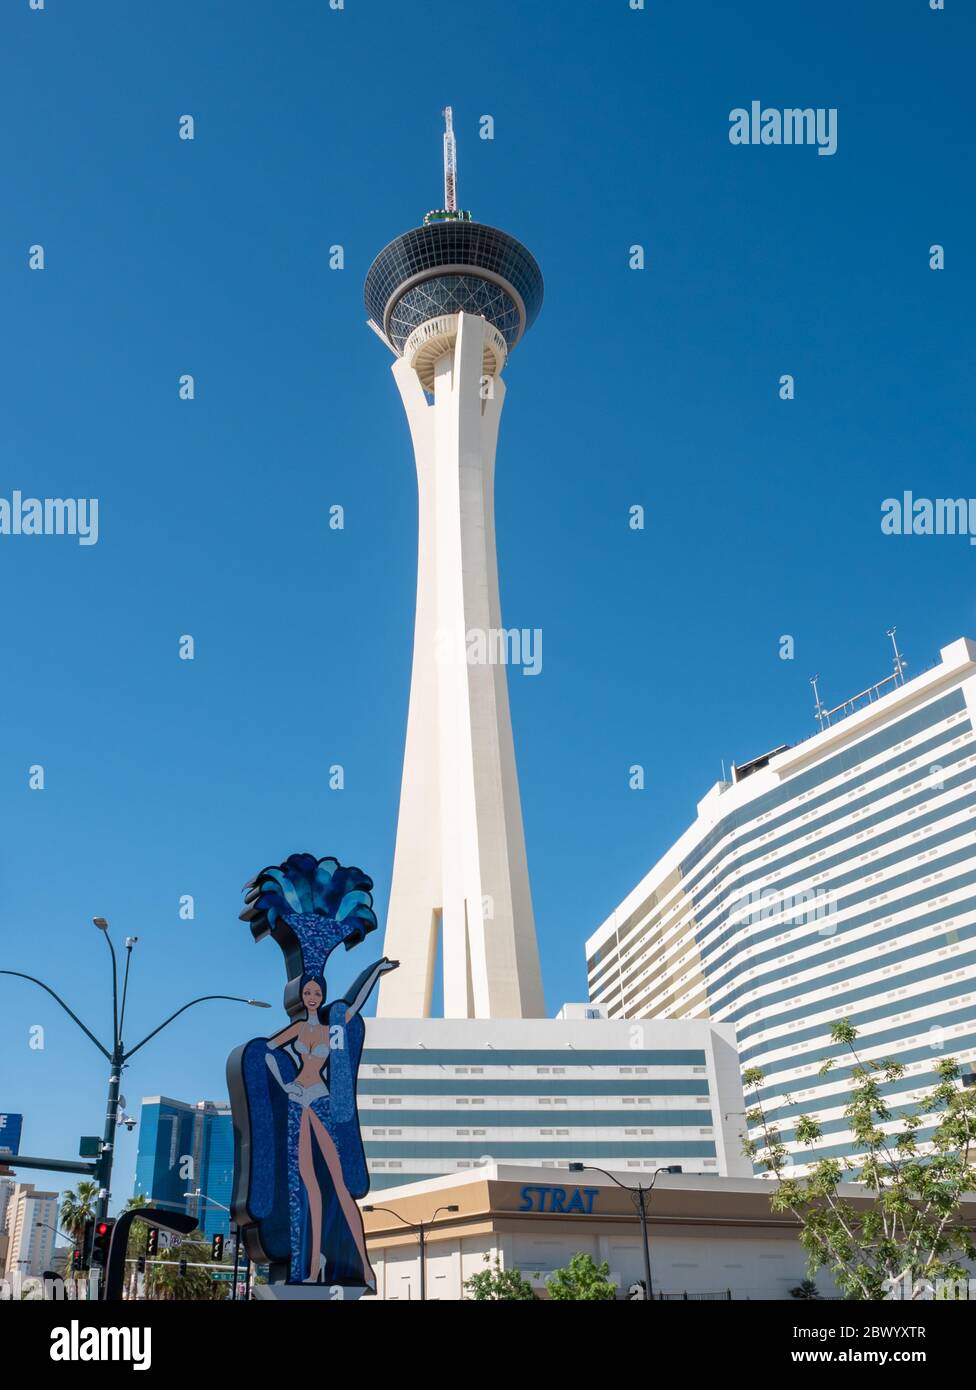 2 de mayo de 2020 las Vegas, Nevada USA: Mirando hacia arriba en la torre del Casino Stratosphere Foto de stock